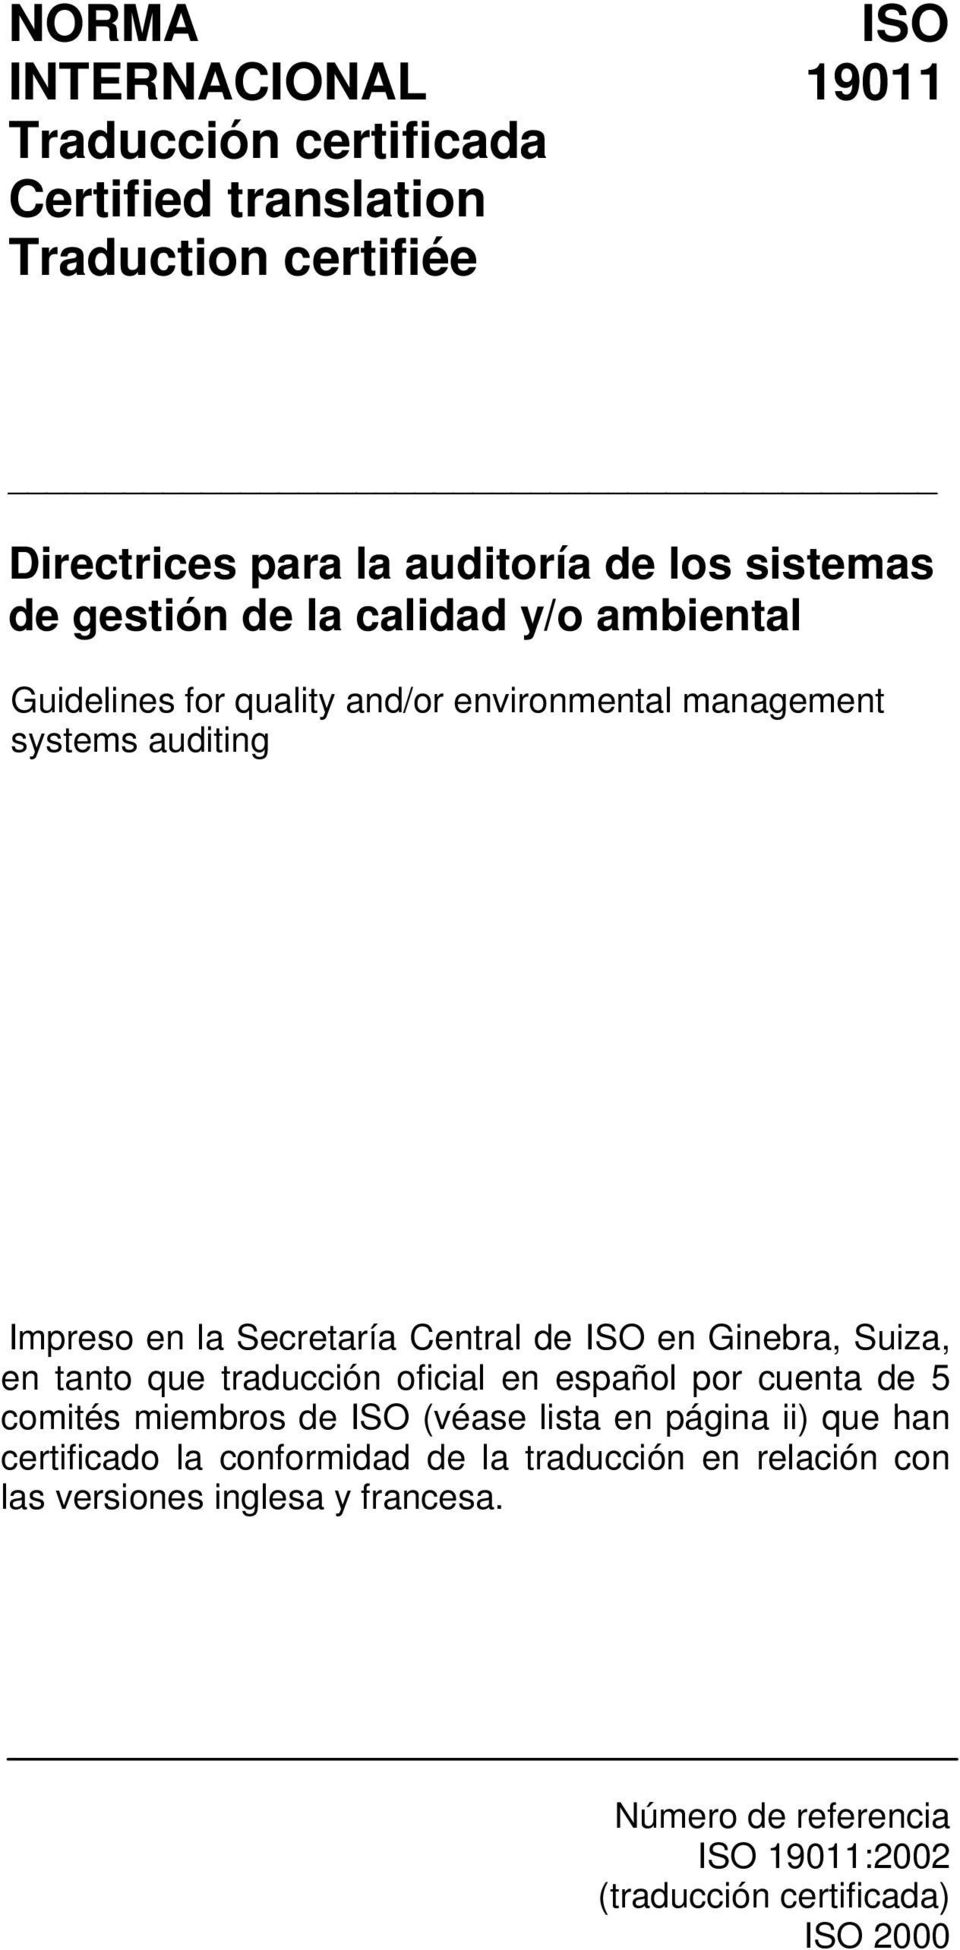 en Ginebra, Suiza, en tanto que traducción oficial en español por cuenta de 5 comités miembros de ISO (véase lista en página ii) que han certificado